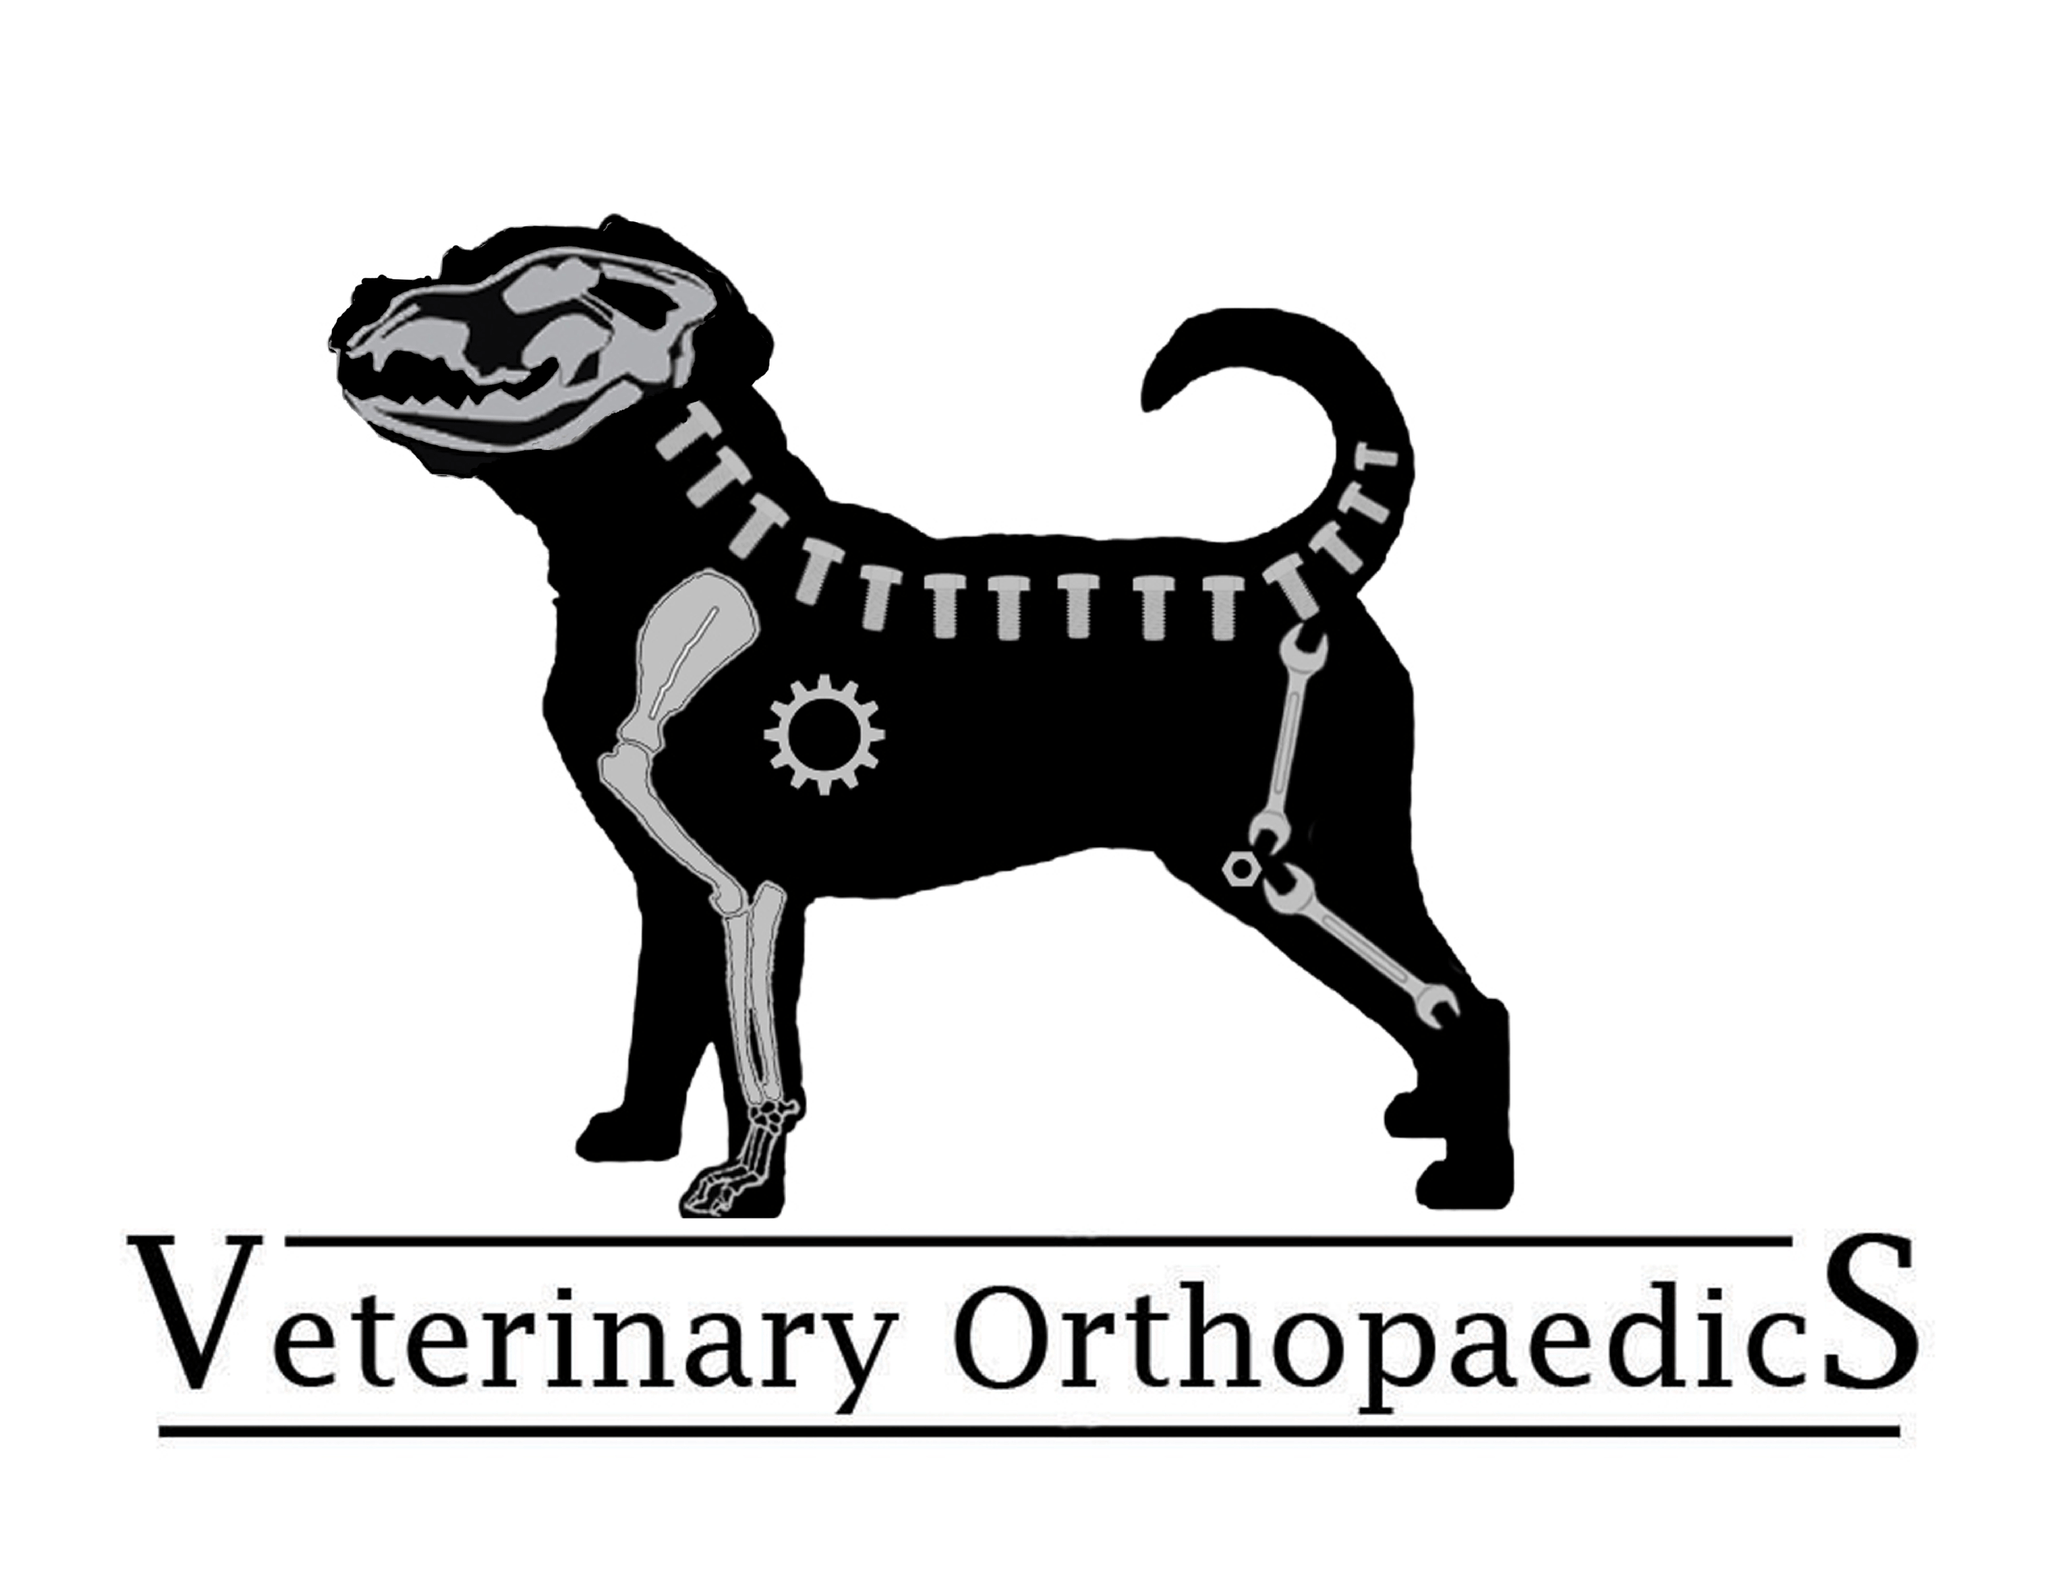 Veterinary Orthopaedics